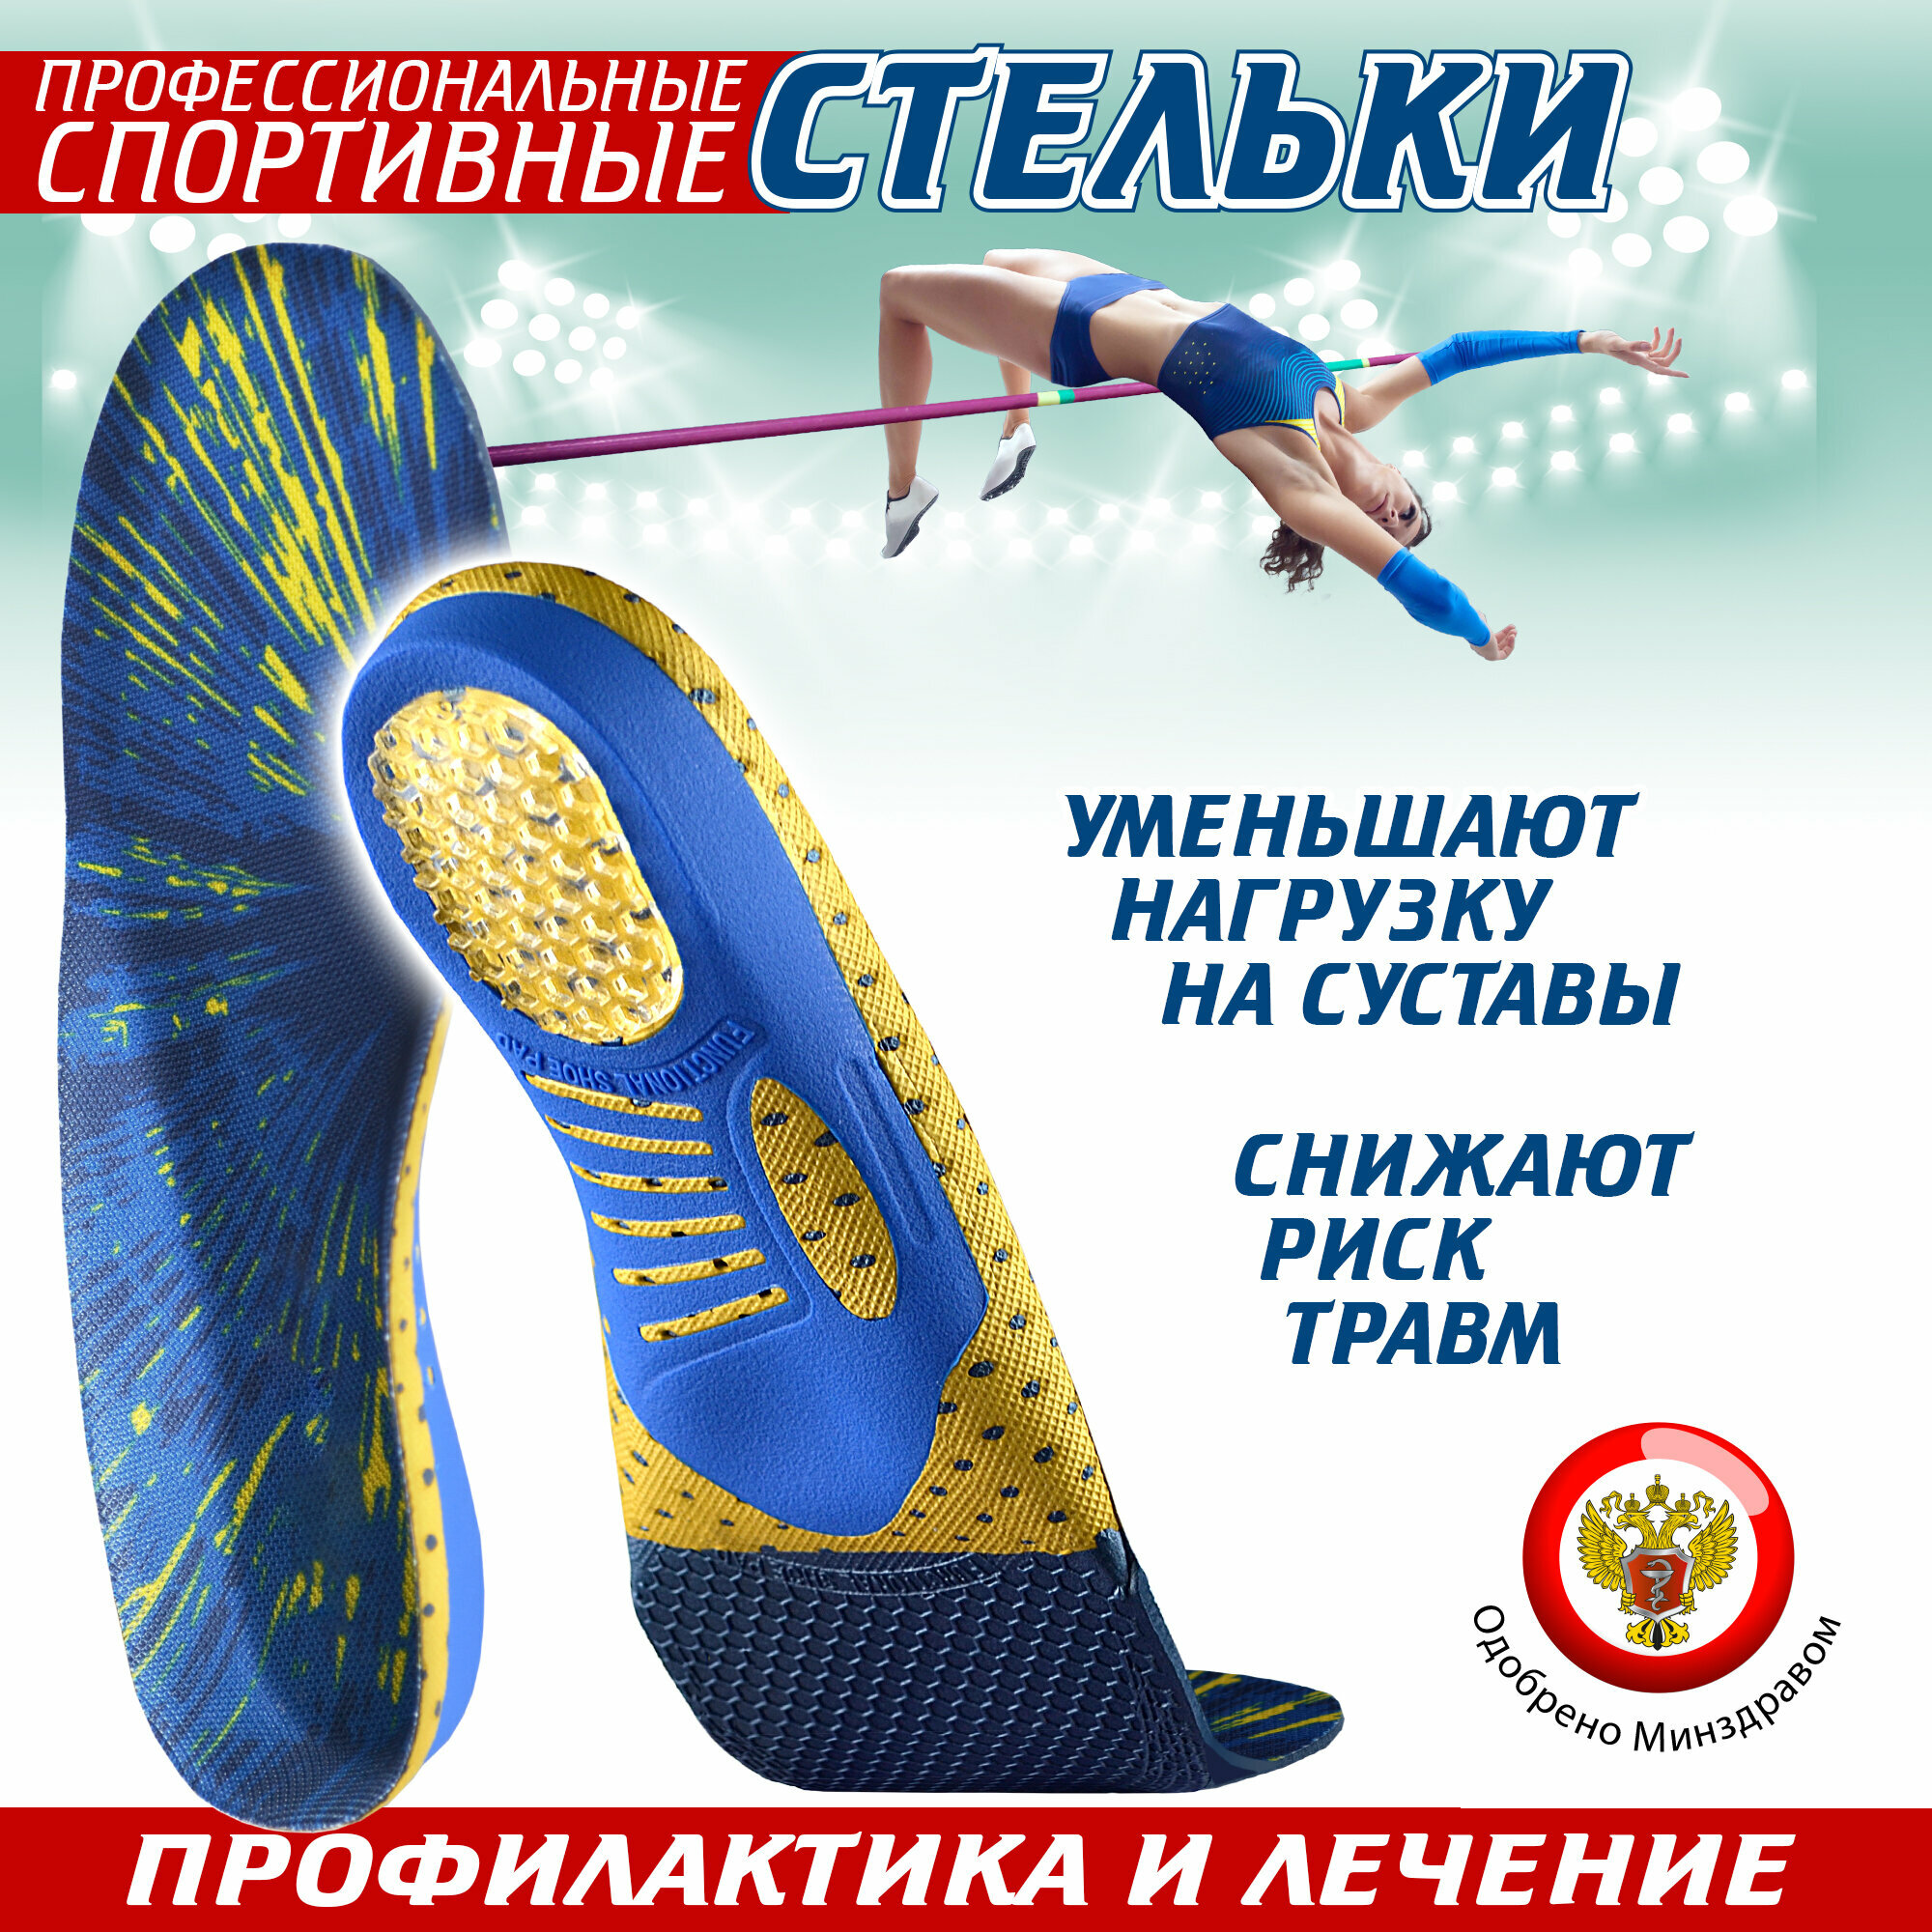 Ортопедические стельки спортивные Sport, для обуви (41)